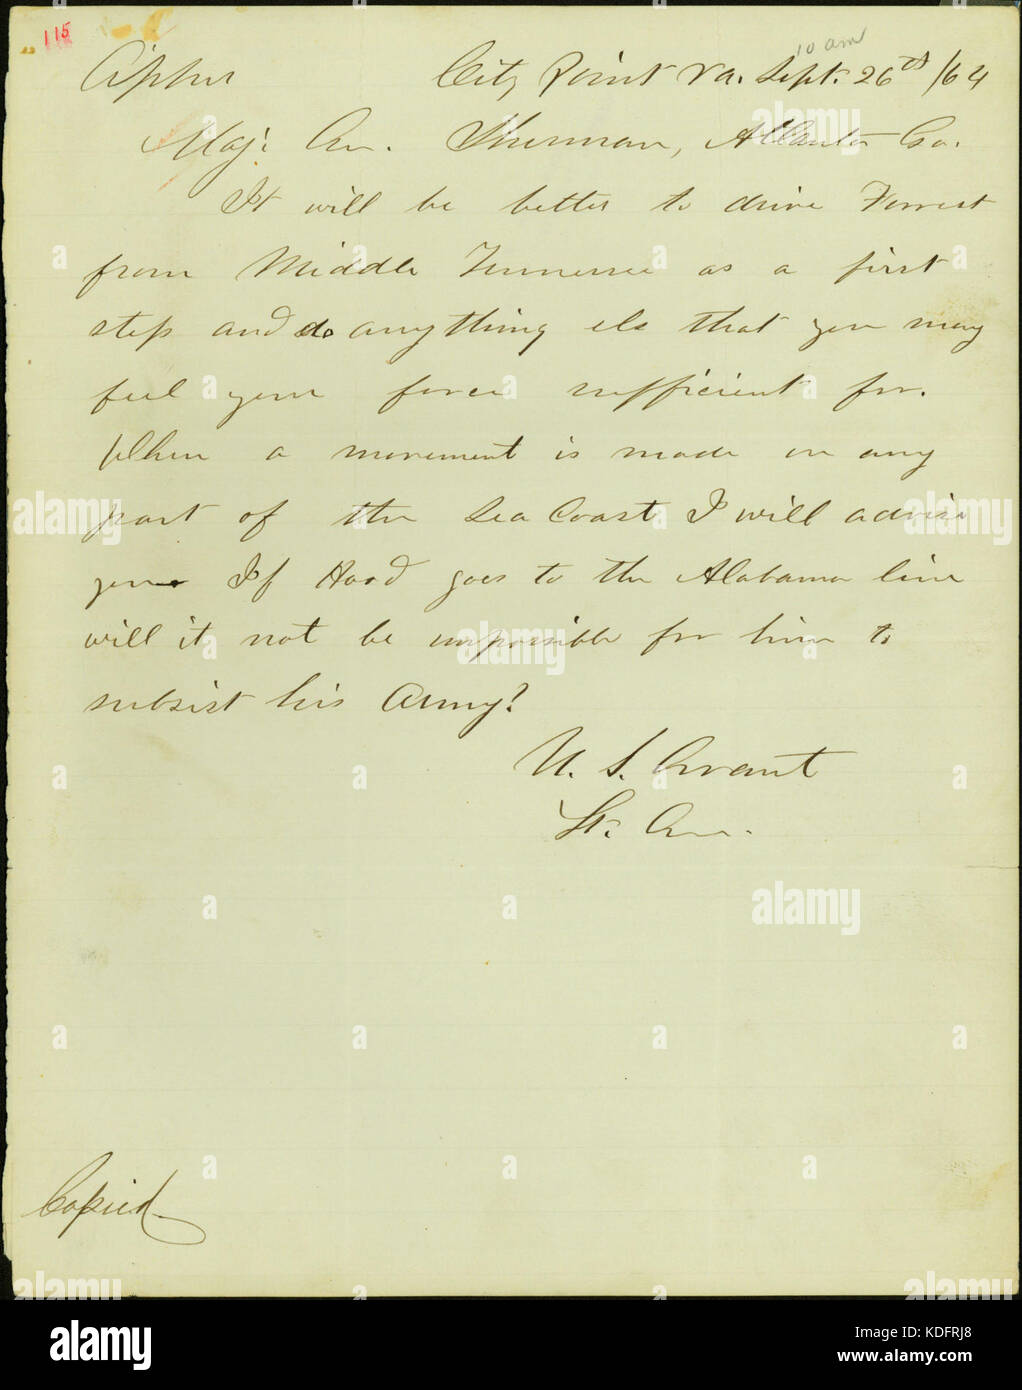 Letter signed U.S. Grant, City Point, Va., to Maj. Gen. Sherman (William T. Sherman), Atlanta, Ga., September 26, 1864 Stock Photo